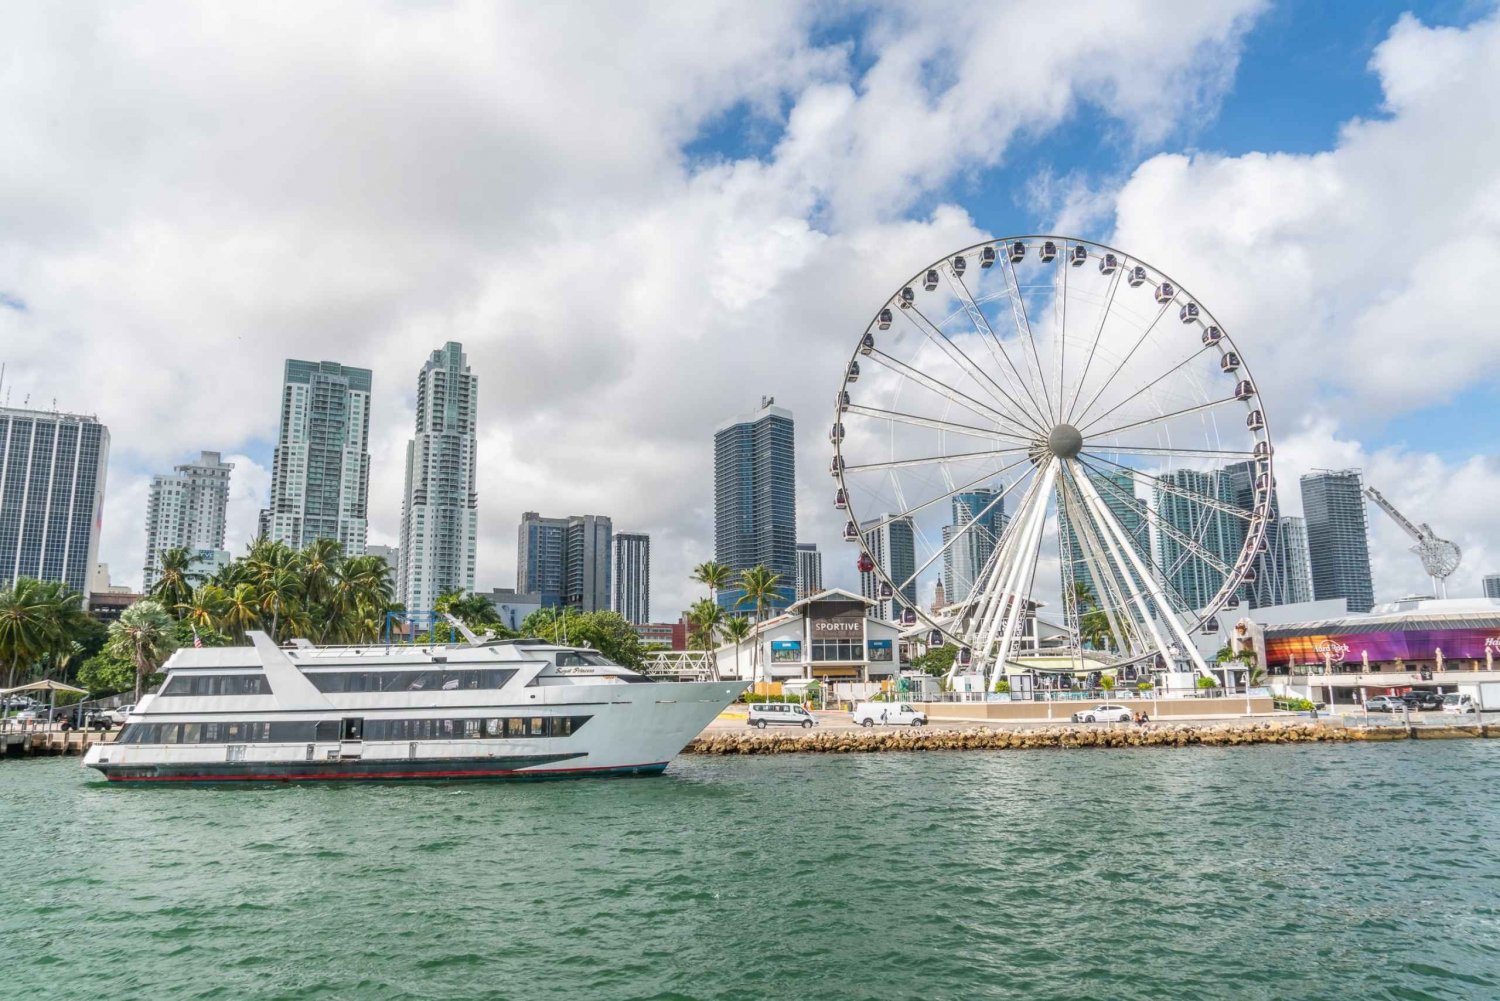 Miami: Det originale krydstogt i Millionaire's Row